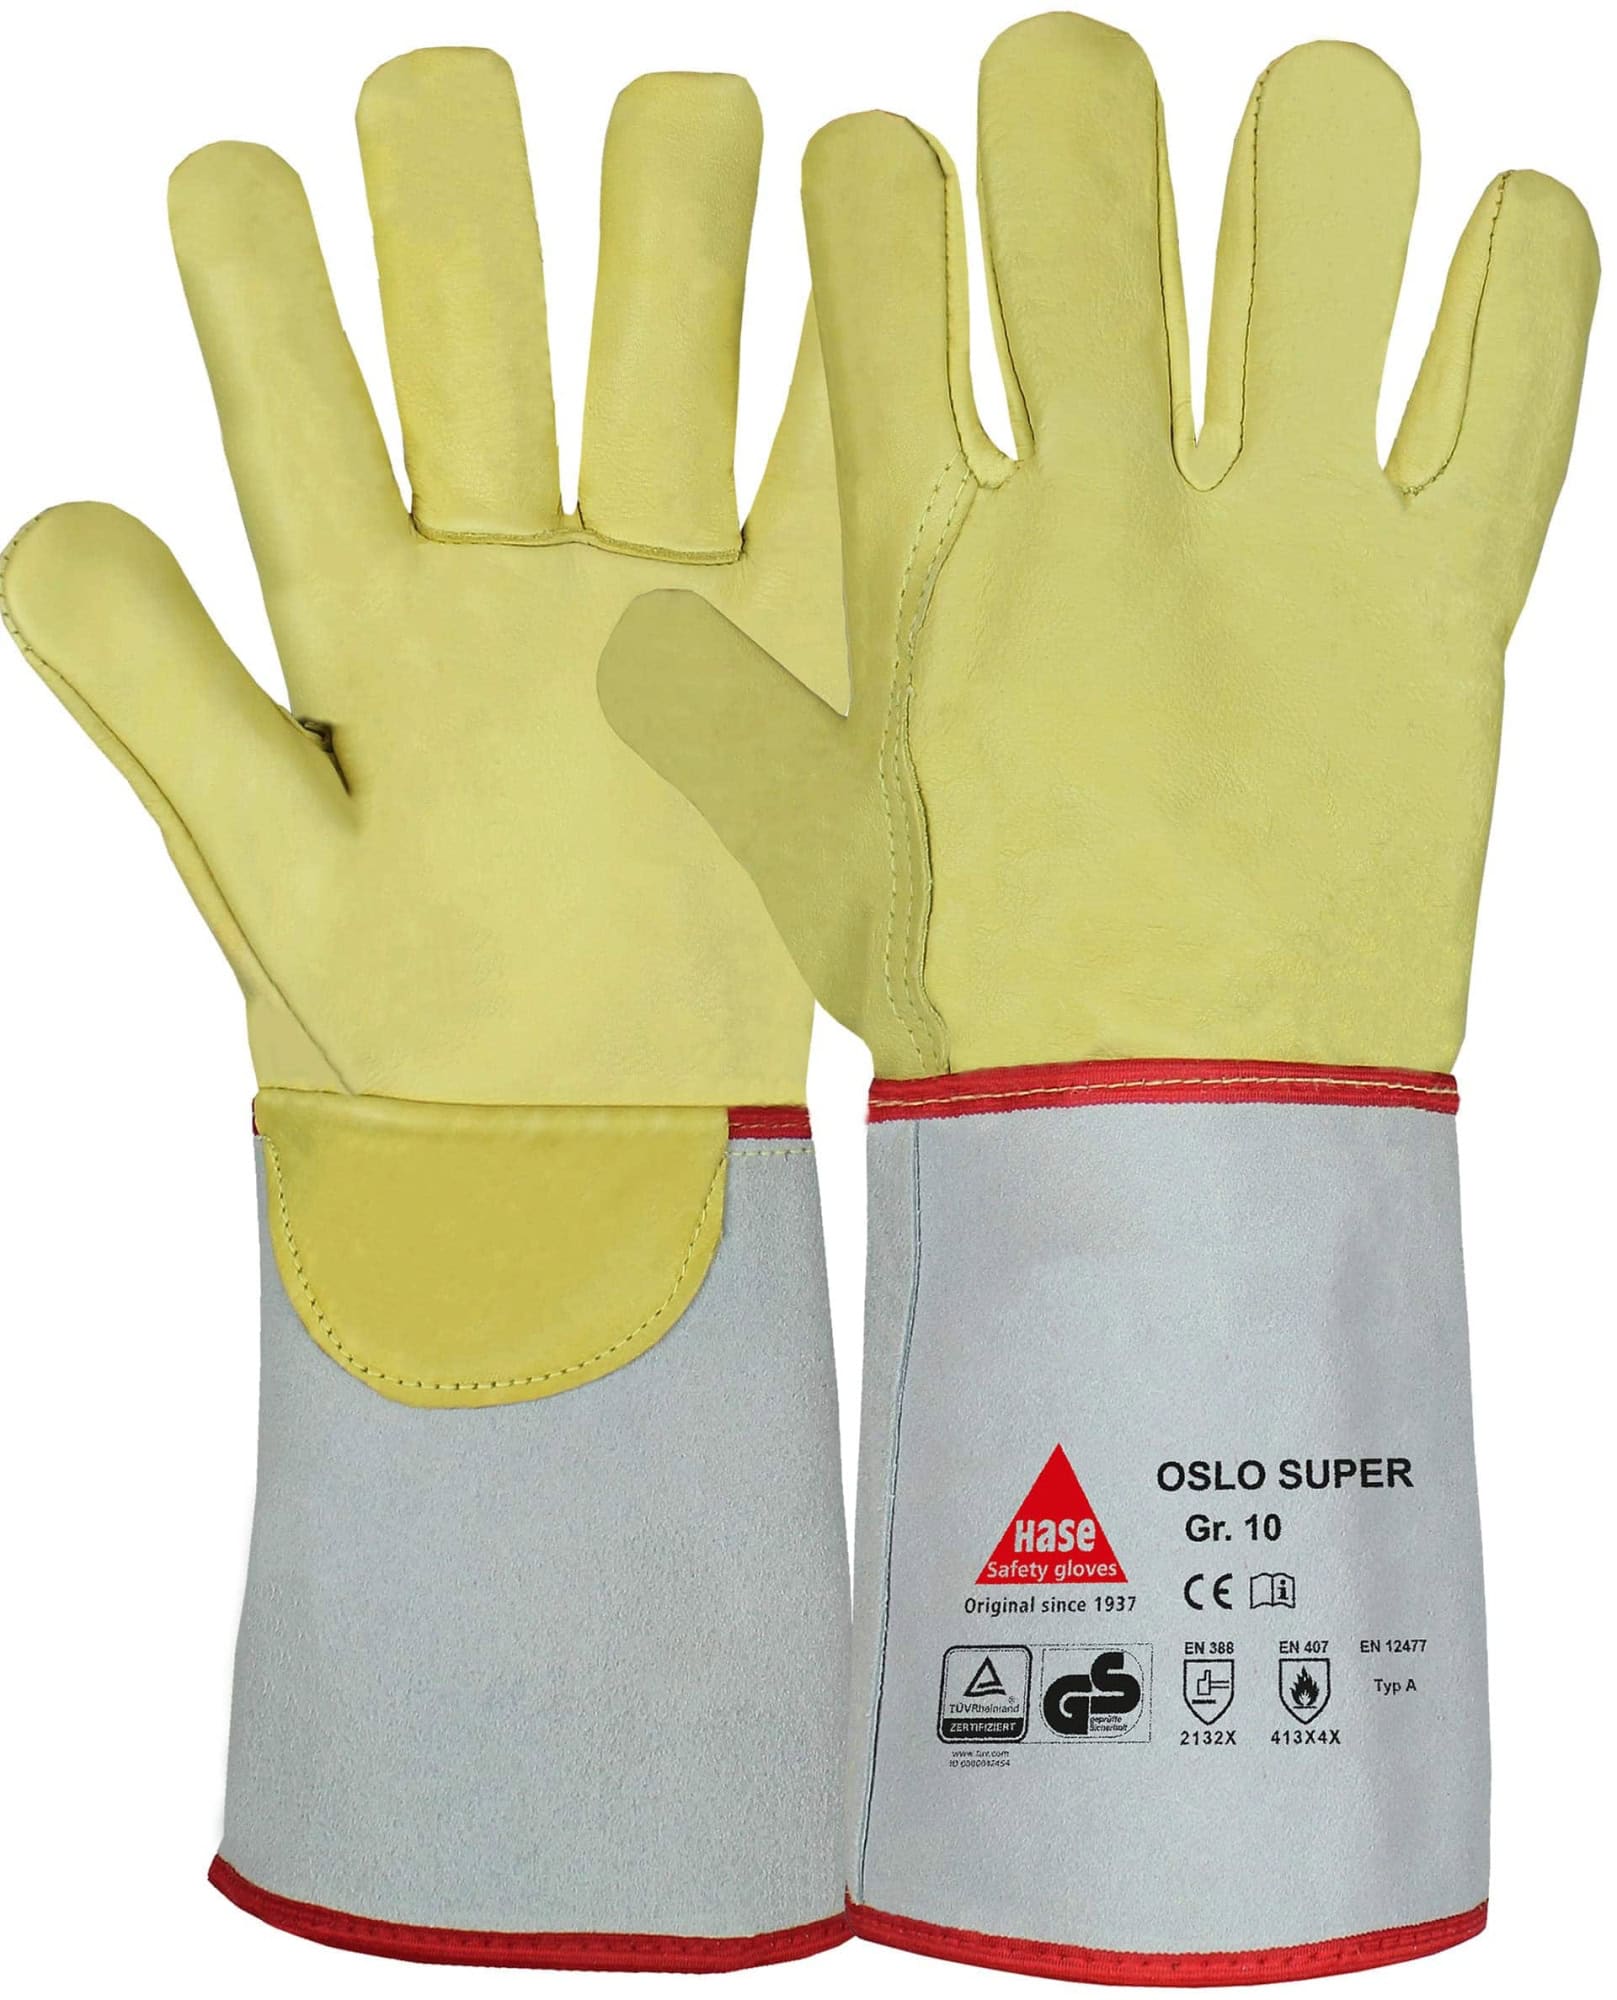 Hase Safety Gloves® OSLO SUPER 105100-8, Größe 8, Typ A, Kat. II, Natur/Gelb, Schweißerhandschuh für schwere Schweißarbeiten